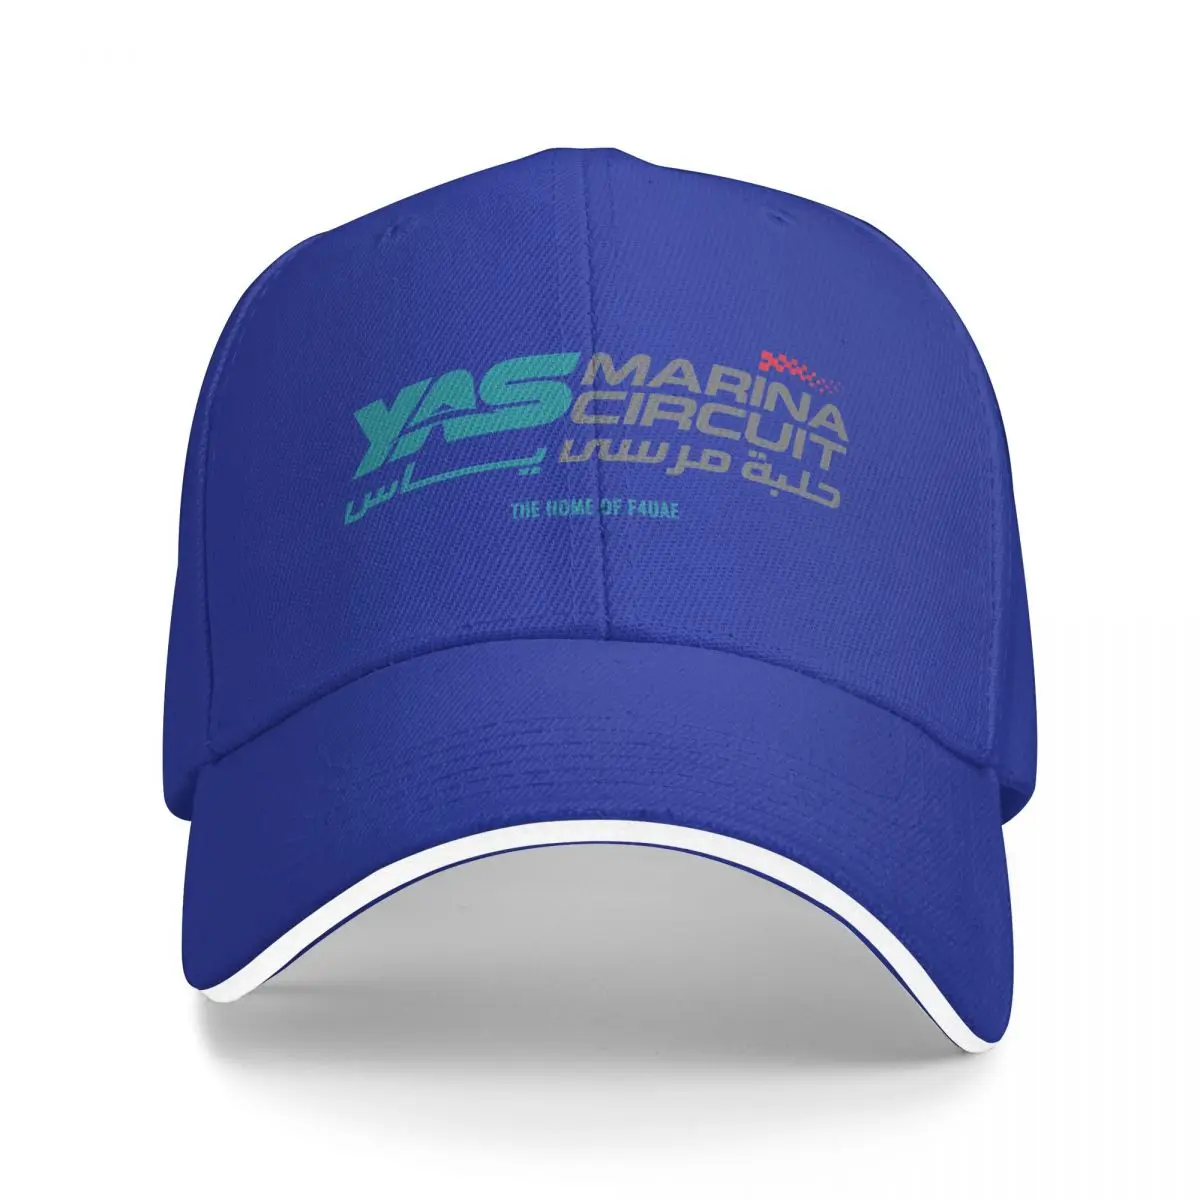 

New Yas Marina Circuit Baseball Cap Custom Cap Trucker Hats Cap Women'S Men'S